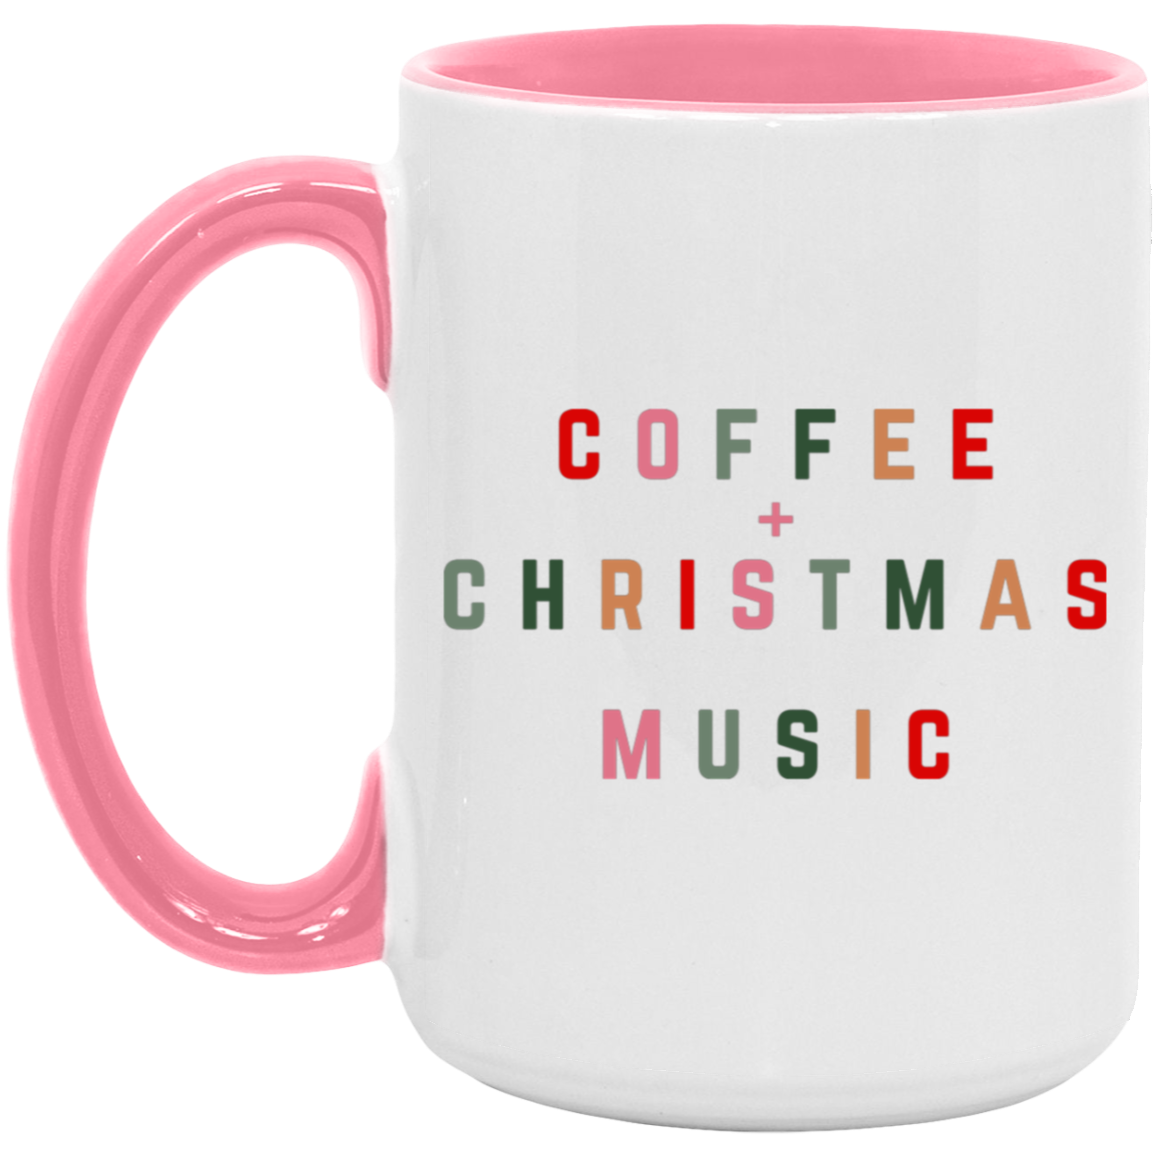 Coffe + Christmas Music 15 oz Coffee Mug